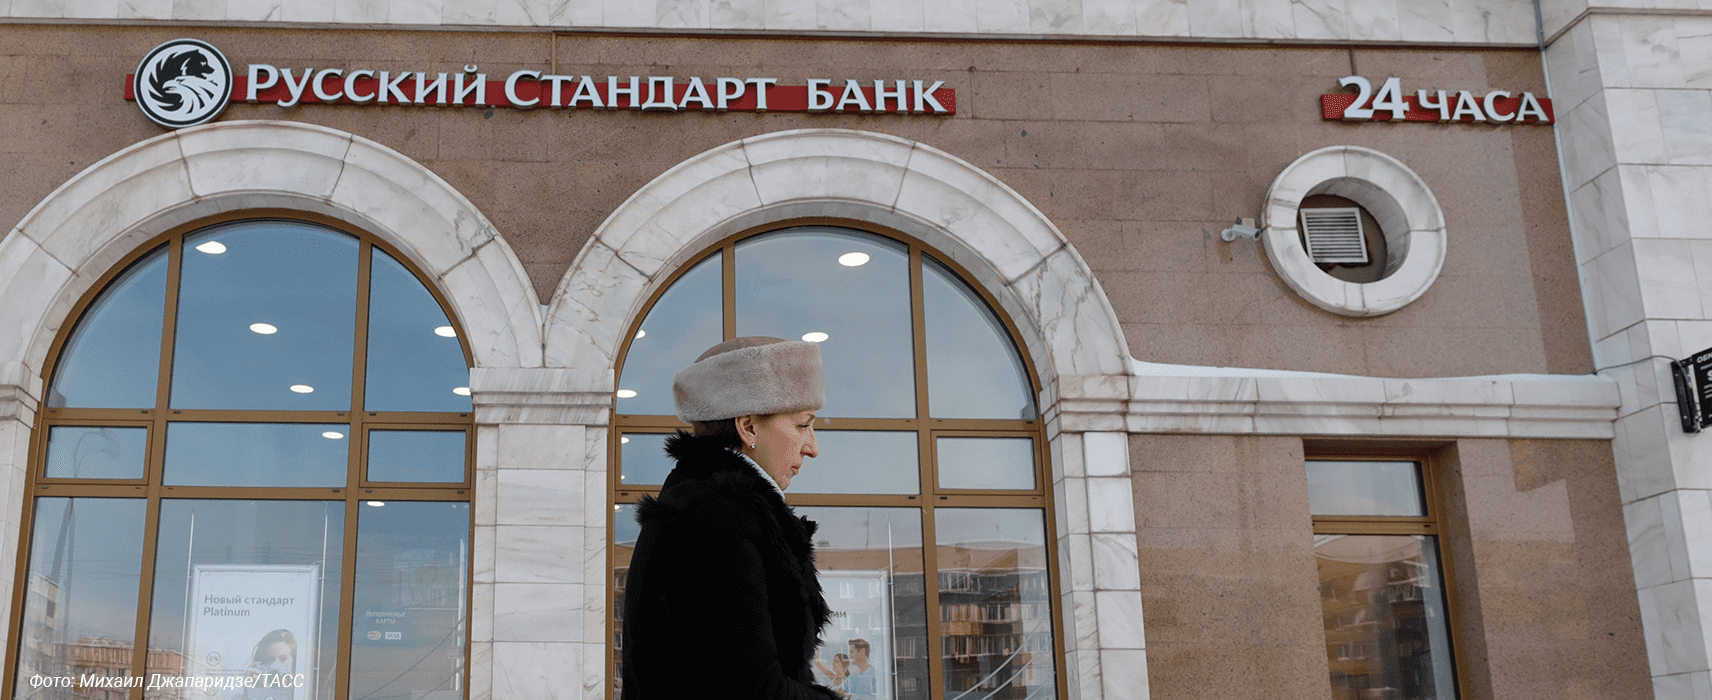 7 российских банков